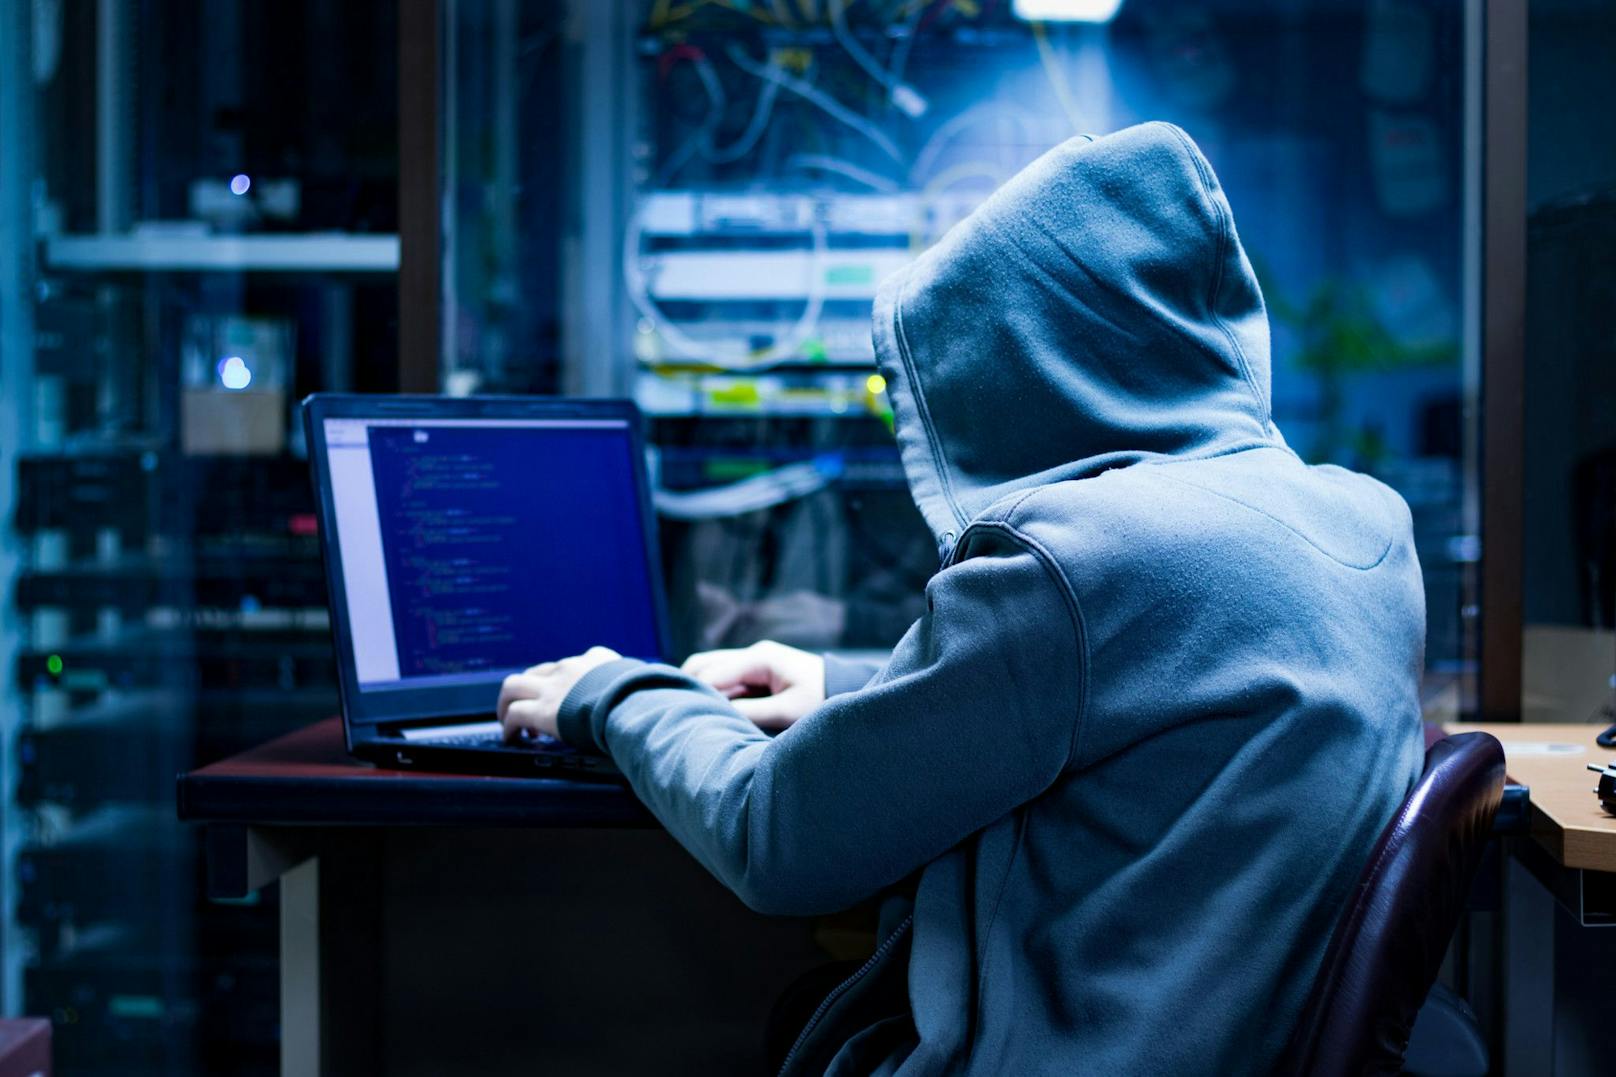 Heikle Personendaten nach Hackerangriff im Darknet